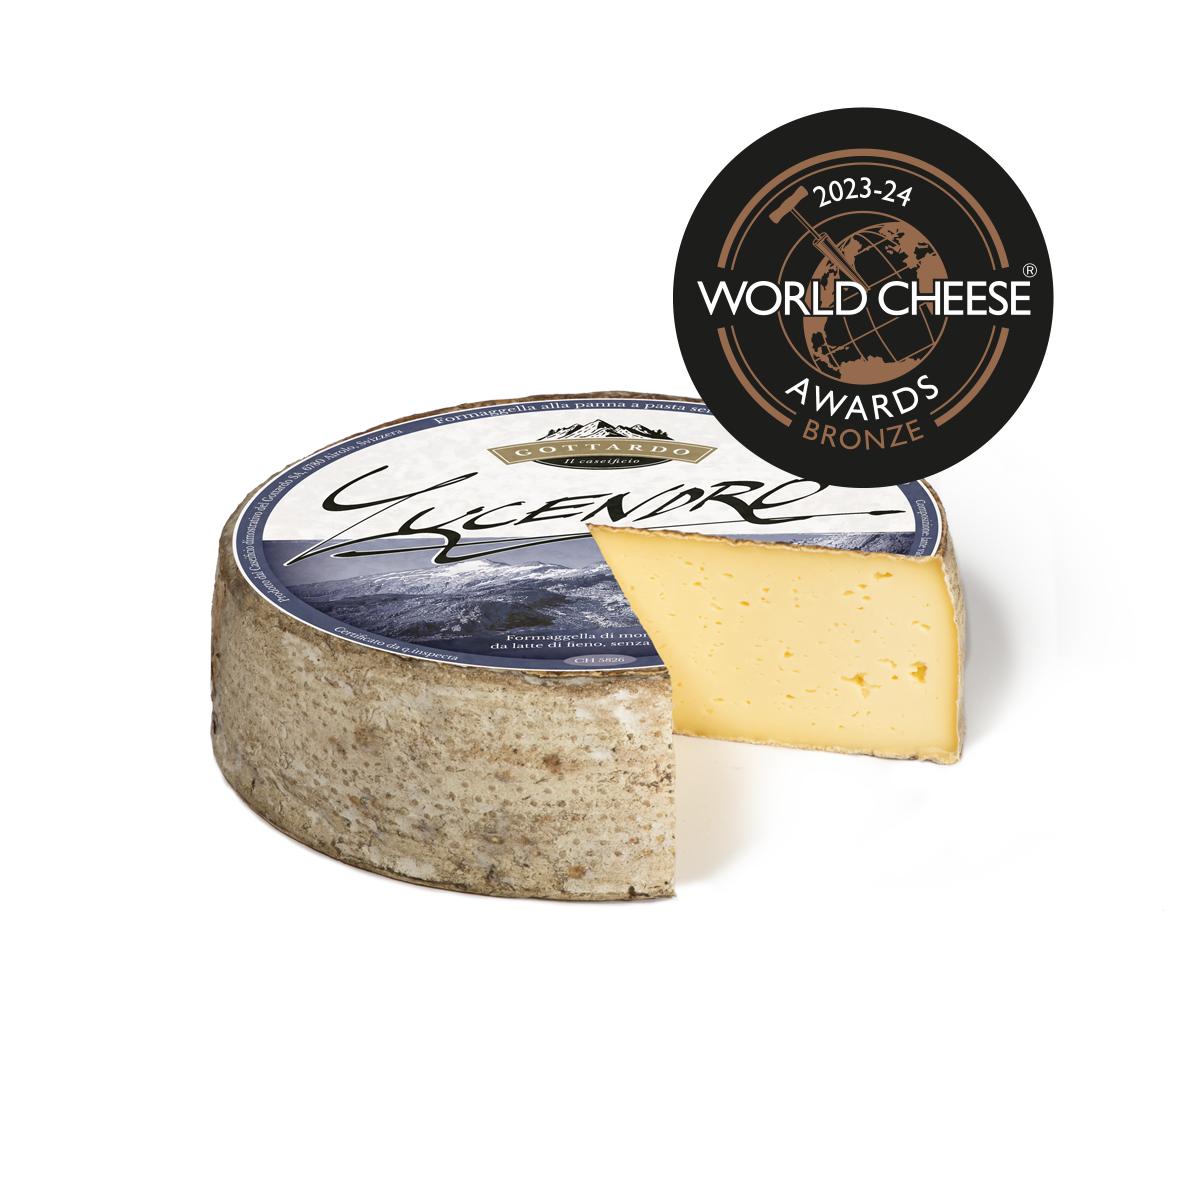 LUCENDRO winner world cheese